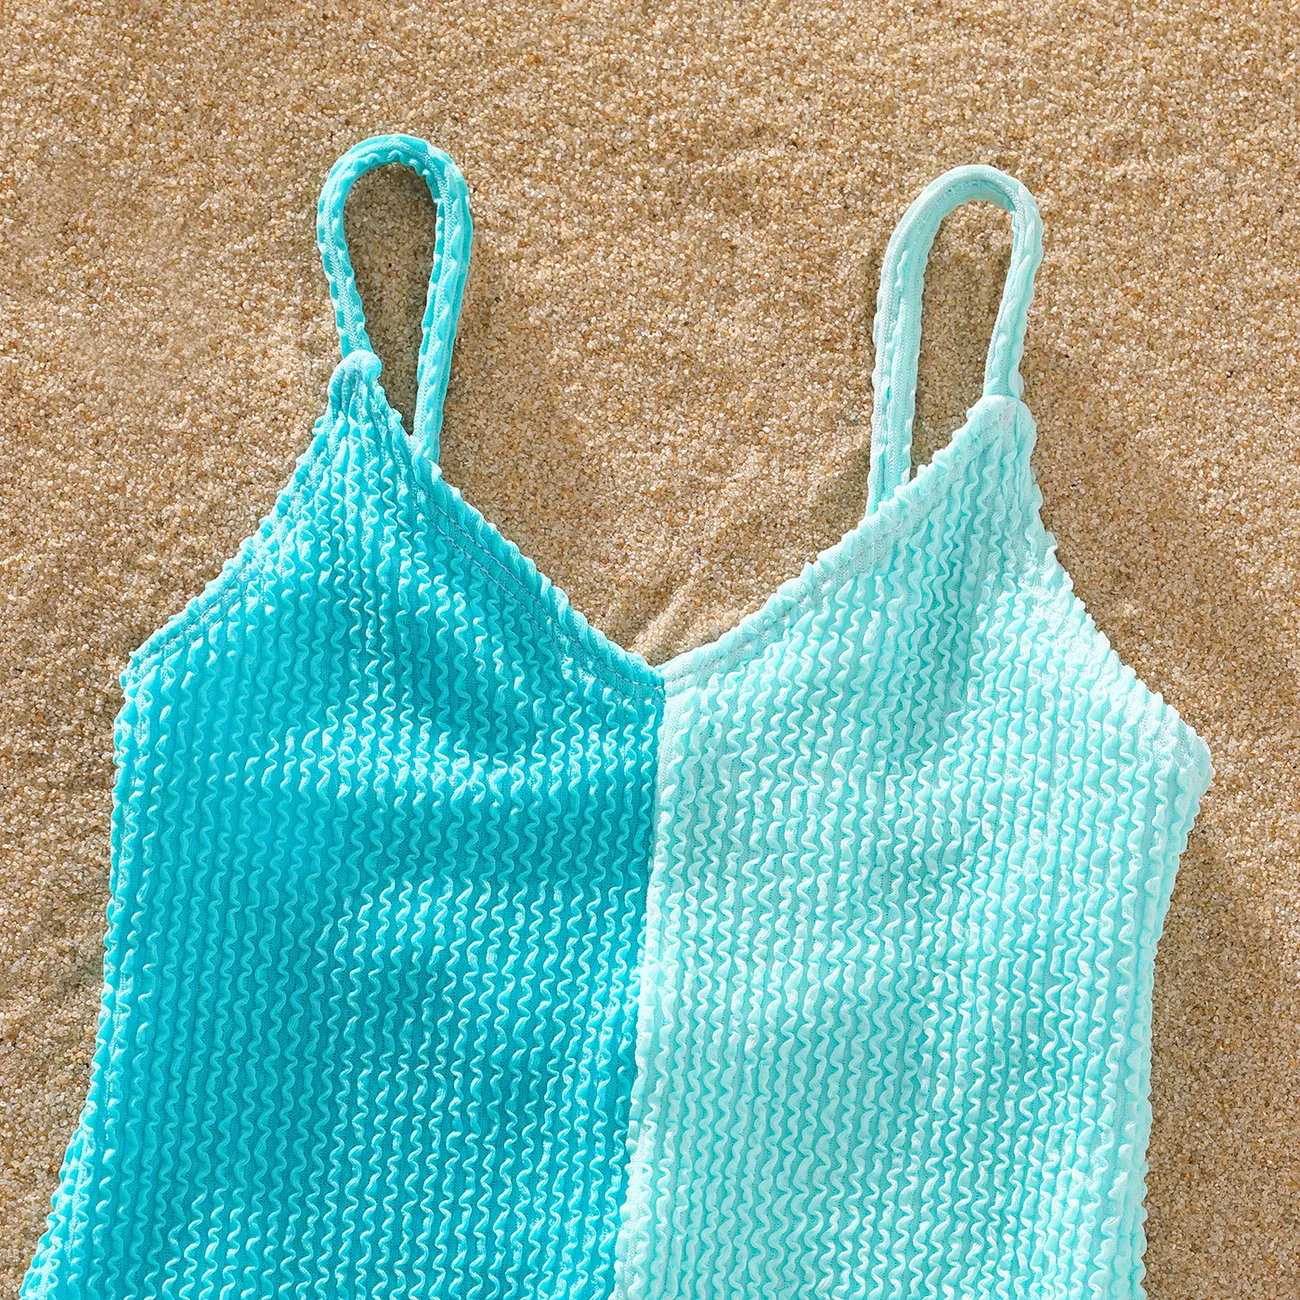 ملابس سباحة من قطعة واحدة متطابقة مع ألوان متطابقة وربطة عنق ذاتيًا وسراويل سباحة مطبوعة بأوراق النخيل بالكامل أزرق أخضر big image 1